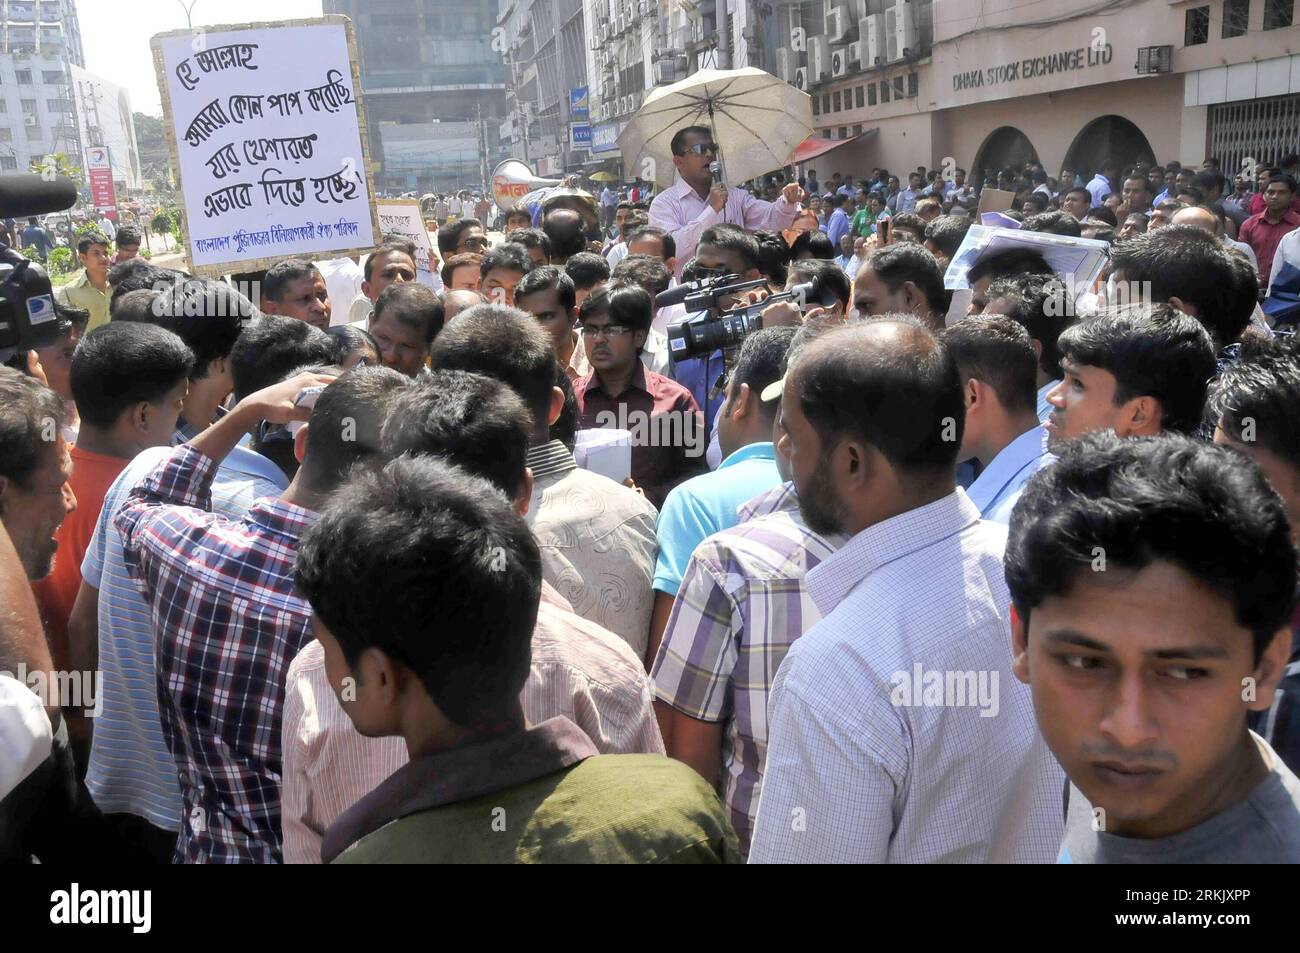 Bildnummer: 56170830 Datum: 12.10.2011 Copyright: imago/Xinhua (111012) -- DACCA, 12 ottobre 2011 (Xinhua) -- i manifestanti si riuniscono di fronte alla Borsa di Dacca per una dimostrazione a Dacca, Bangladesh, il 12 ottobre 2011. Mercoledì scorso un gruppo di piccoli investitori ha continuato a manifestare davanti alla principale borsa del Bangladesh nella capitale Dhaka, protestando contro un forte calo dei prezzi. (Xinhua/Shariful Islam) (nxl) BANGLADESH-DHAKA-STOCK-PROTESTA PUBLICATIONxNOTxINxCHN Gesellschaft Wirtschaft Demo Protest Börse Anleger Preisverfall Inflation Premuiumd xbs x0x 2011 quer 56170830 Data 12 10 20 Foto Stock